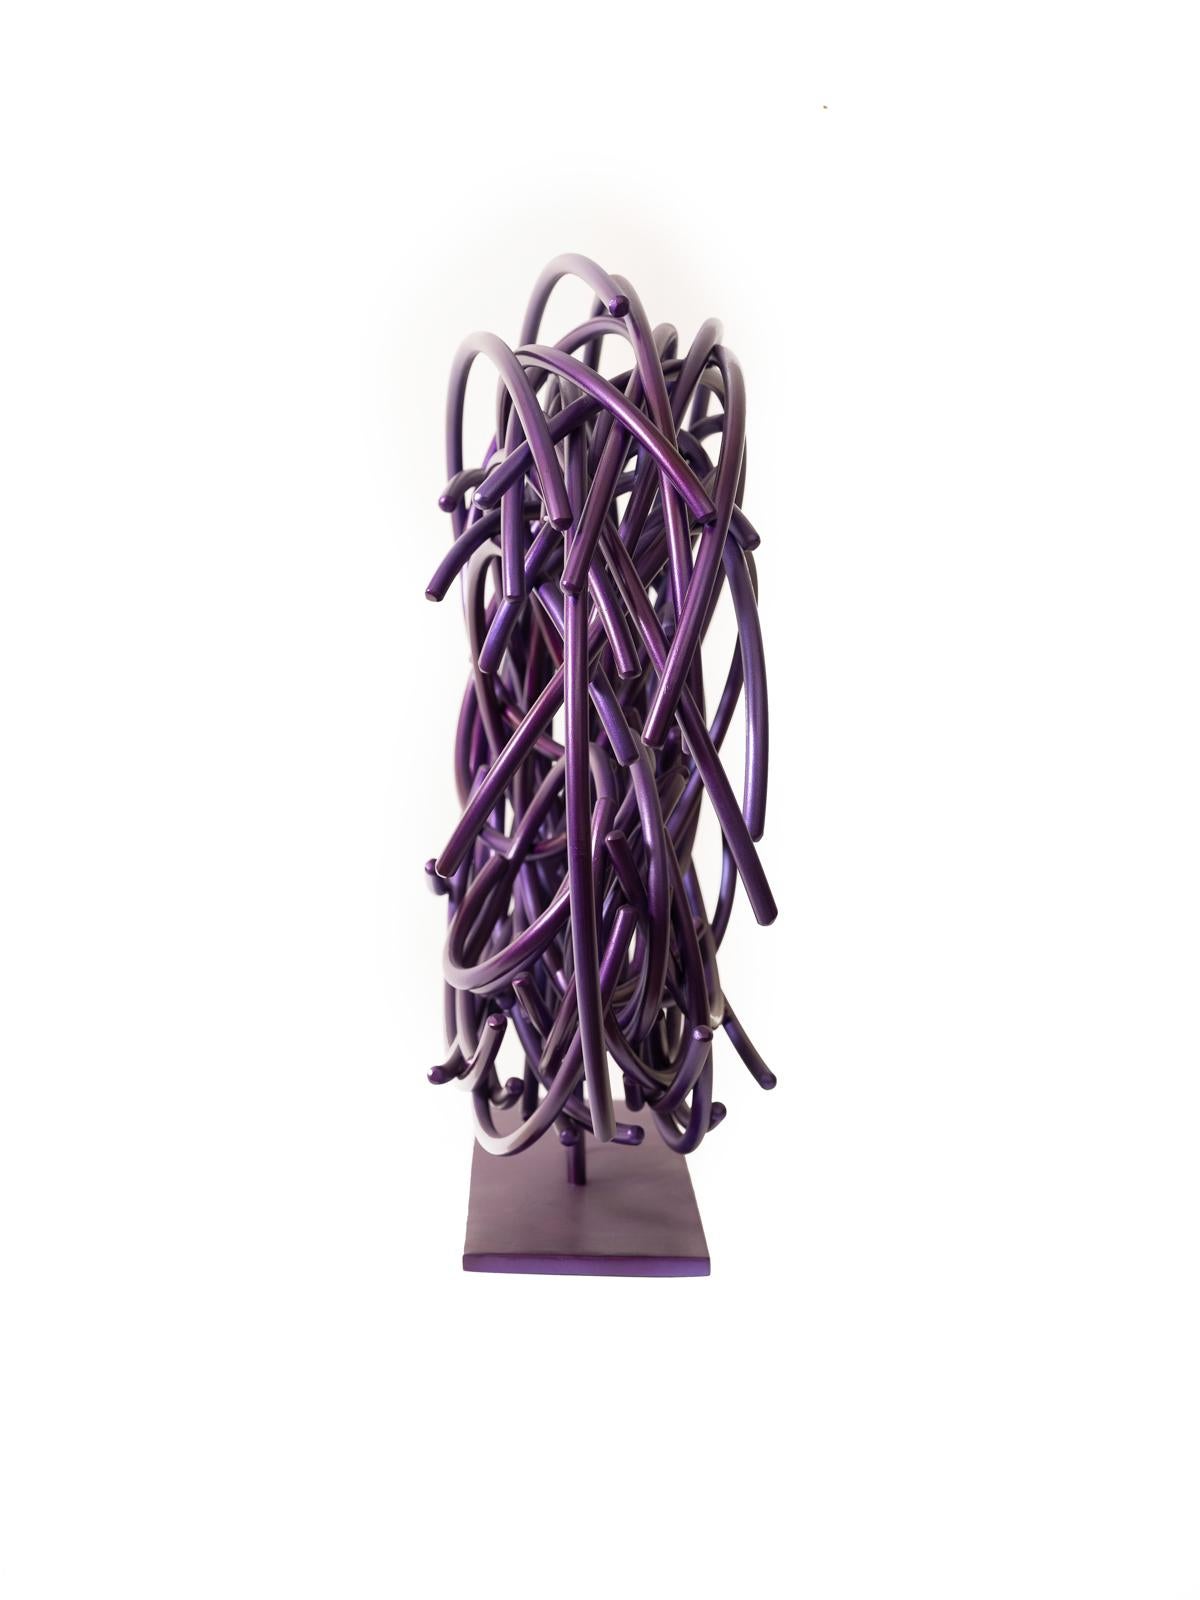 Diese dynamische, auberginefarbene Skulptur von Shayne Dark ist Teil einer aufregenden neuen Serie namens Maelstrom. Bekannt für seine einzigartig schönen abstrakten Arbeiten, ist dieses Stück handgeschmiedet aus kleinen runden Aluminiumstäben, die